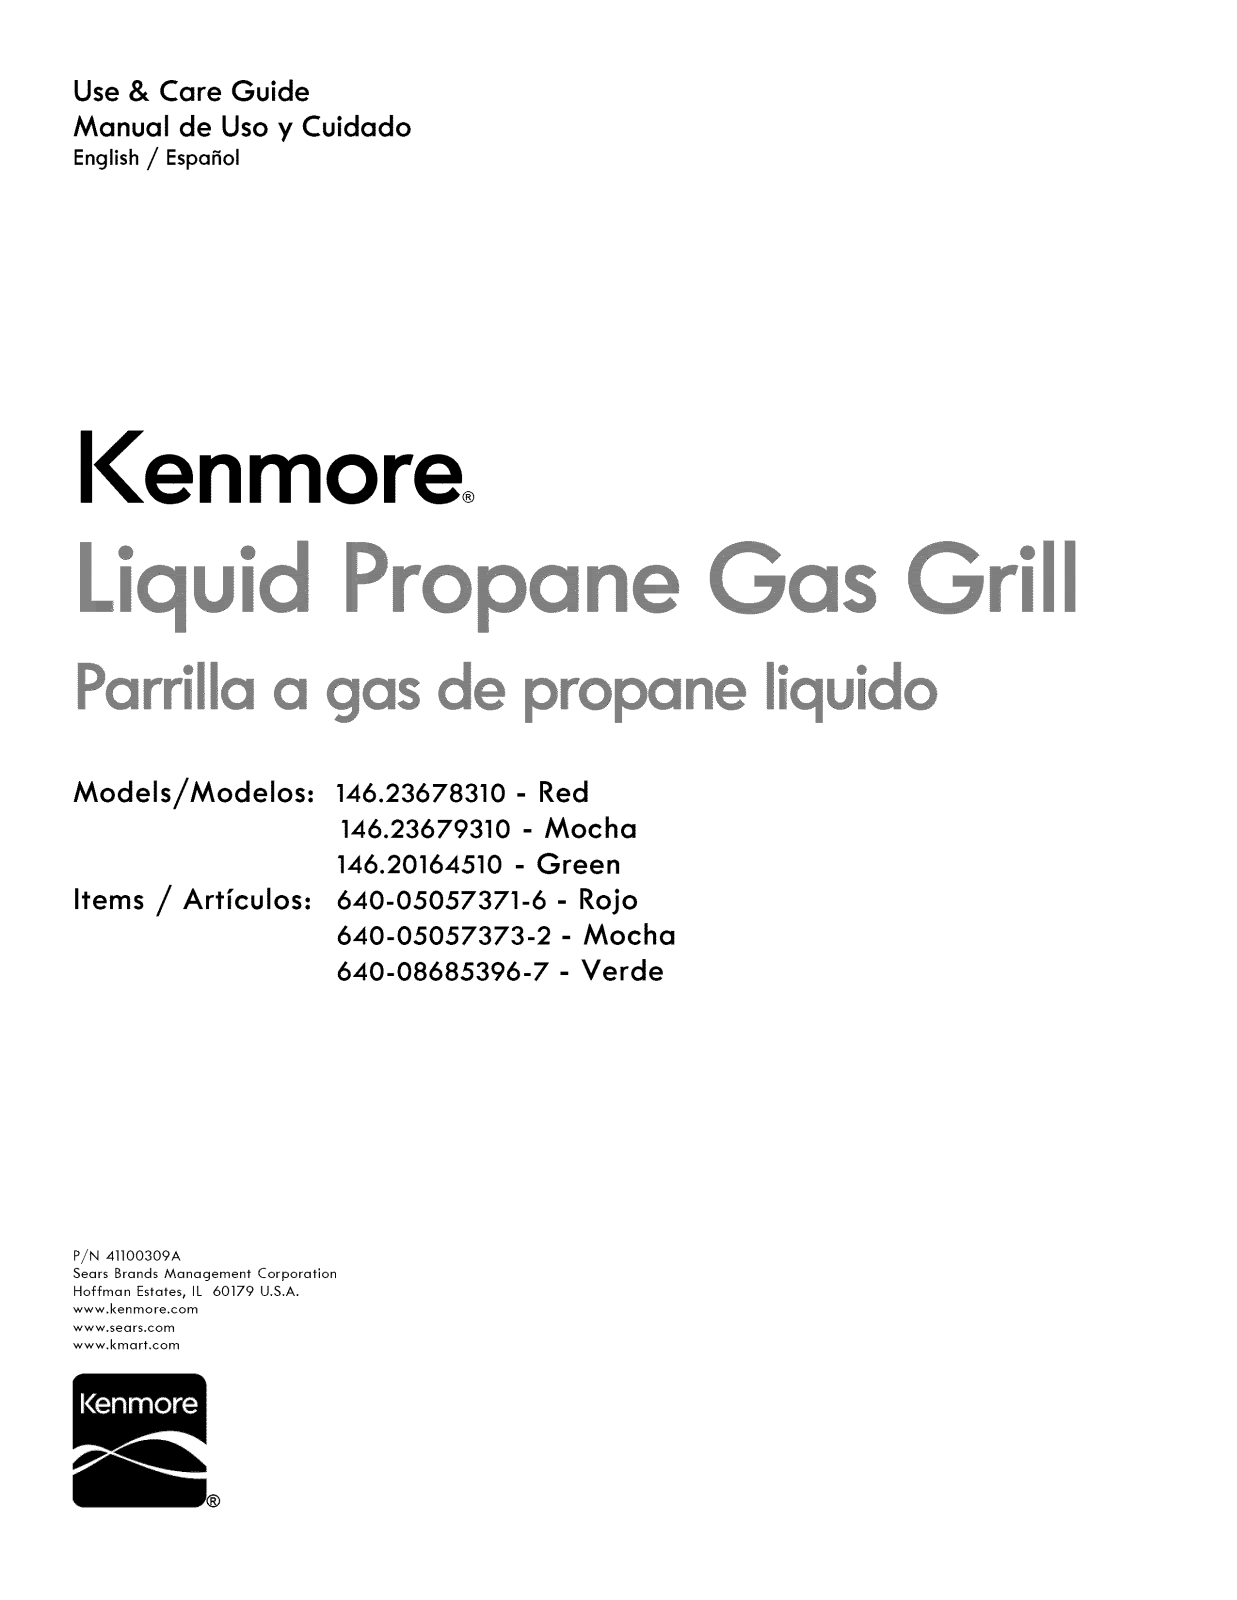 Kenmore 640-05057373-2, 640-05057371-6, 14620164510 Owner’s Manual